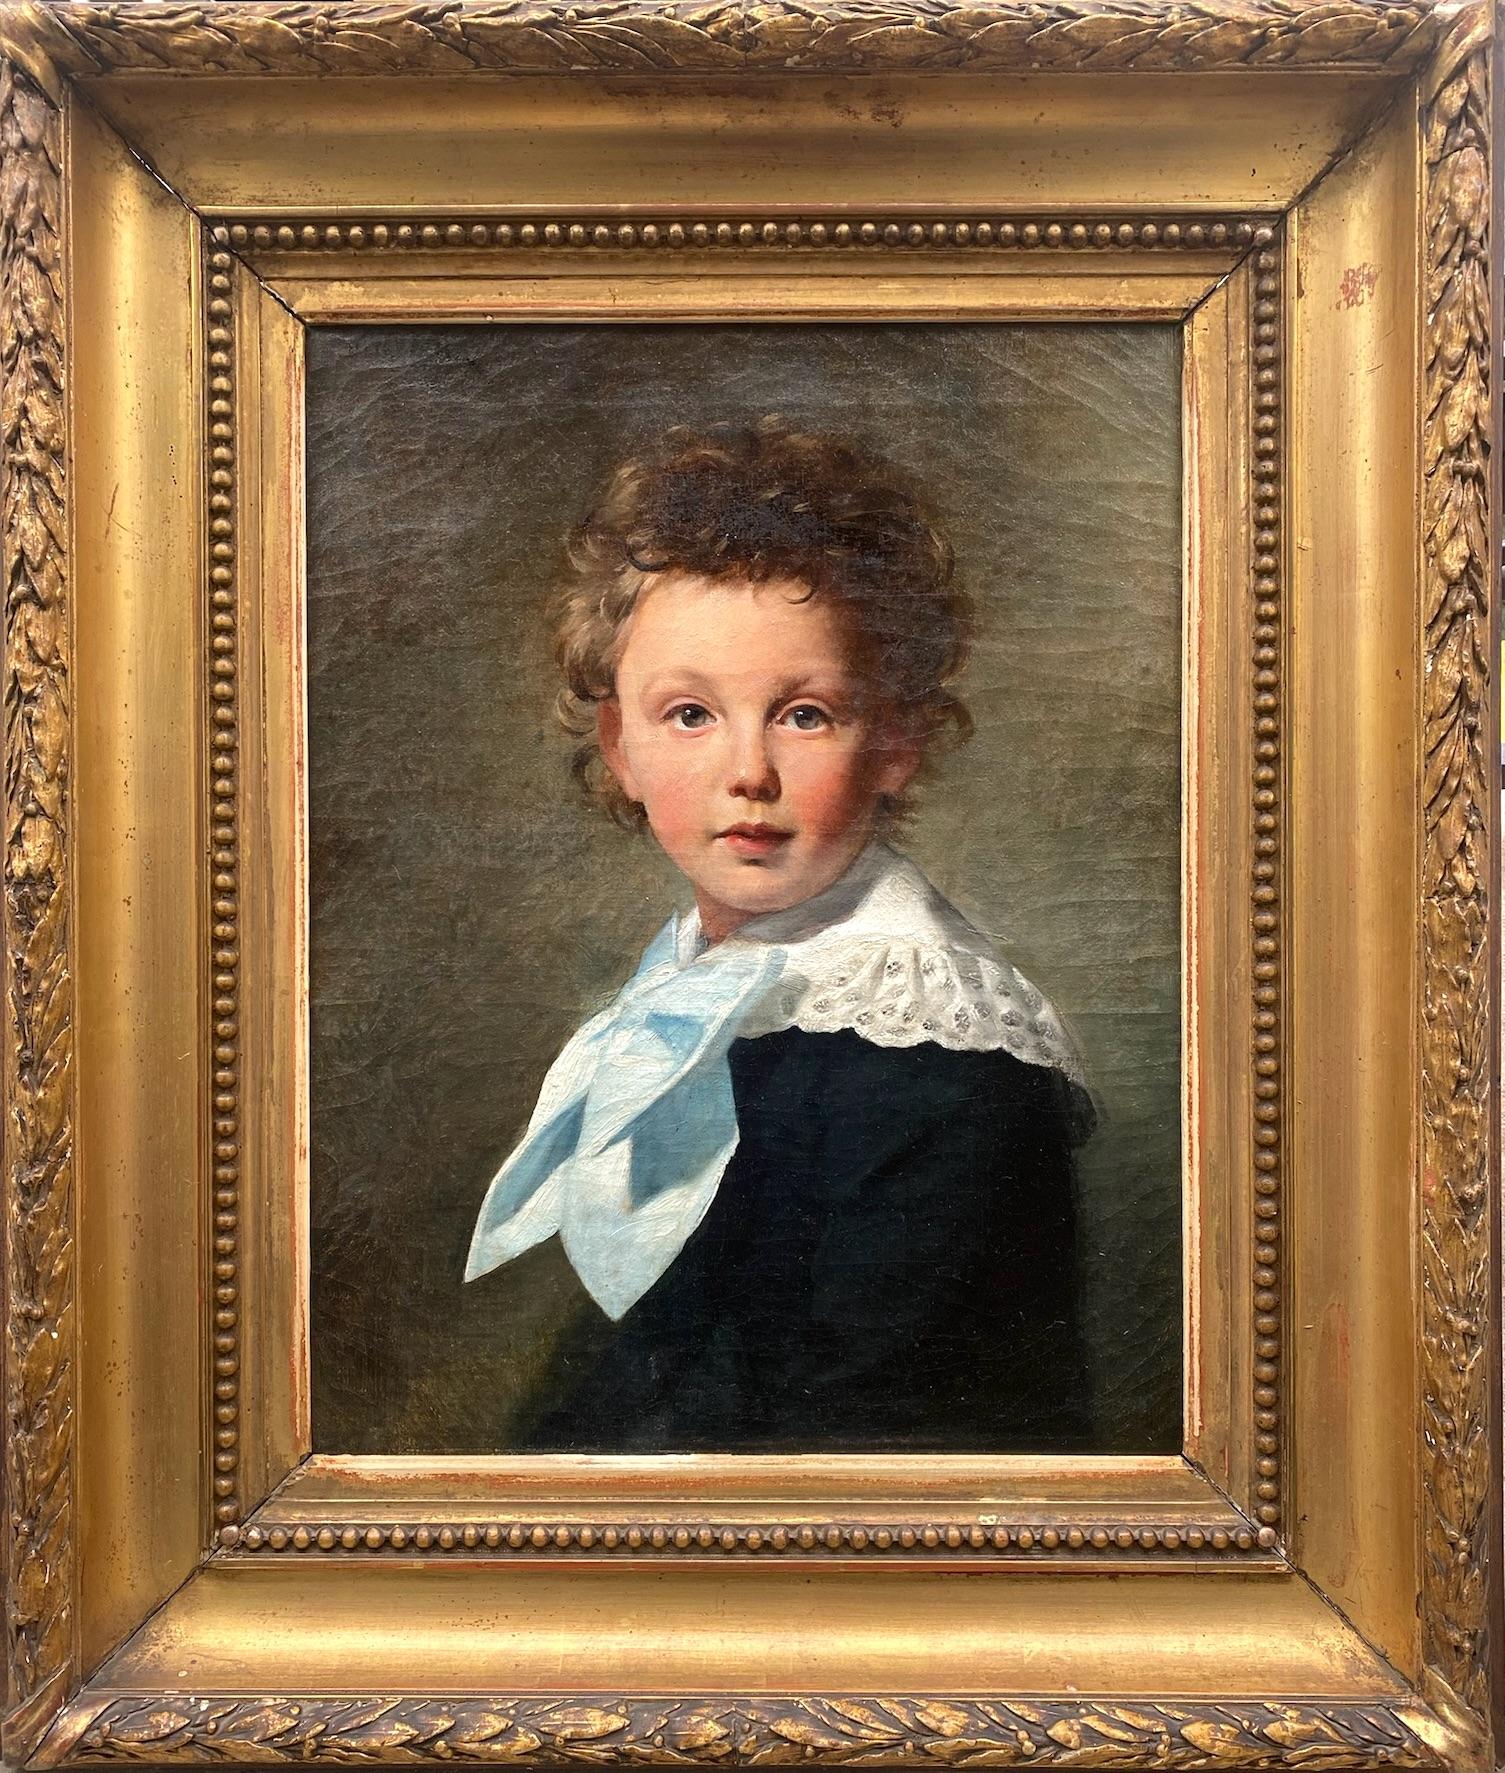 Le nœud bleu : un petit garçon aux cheveux bouclés, peinture à l'huile naturaliste